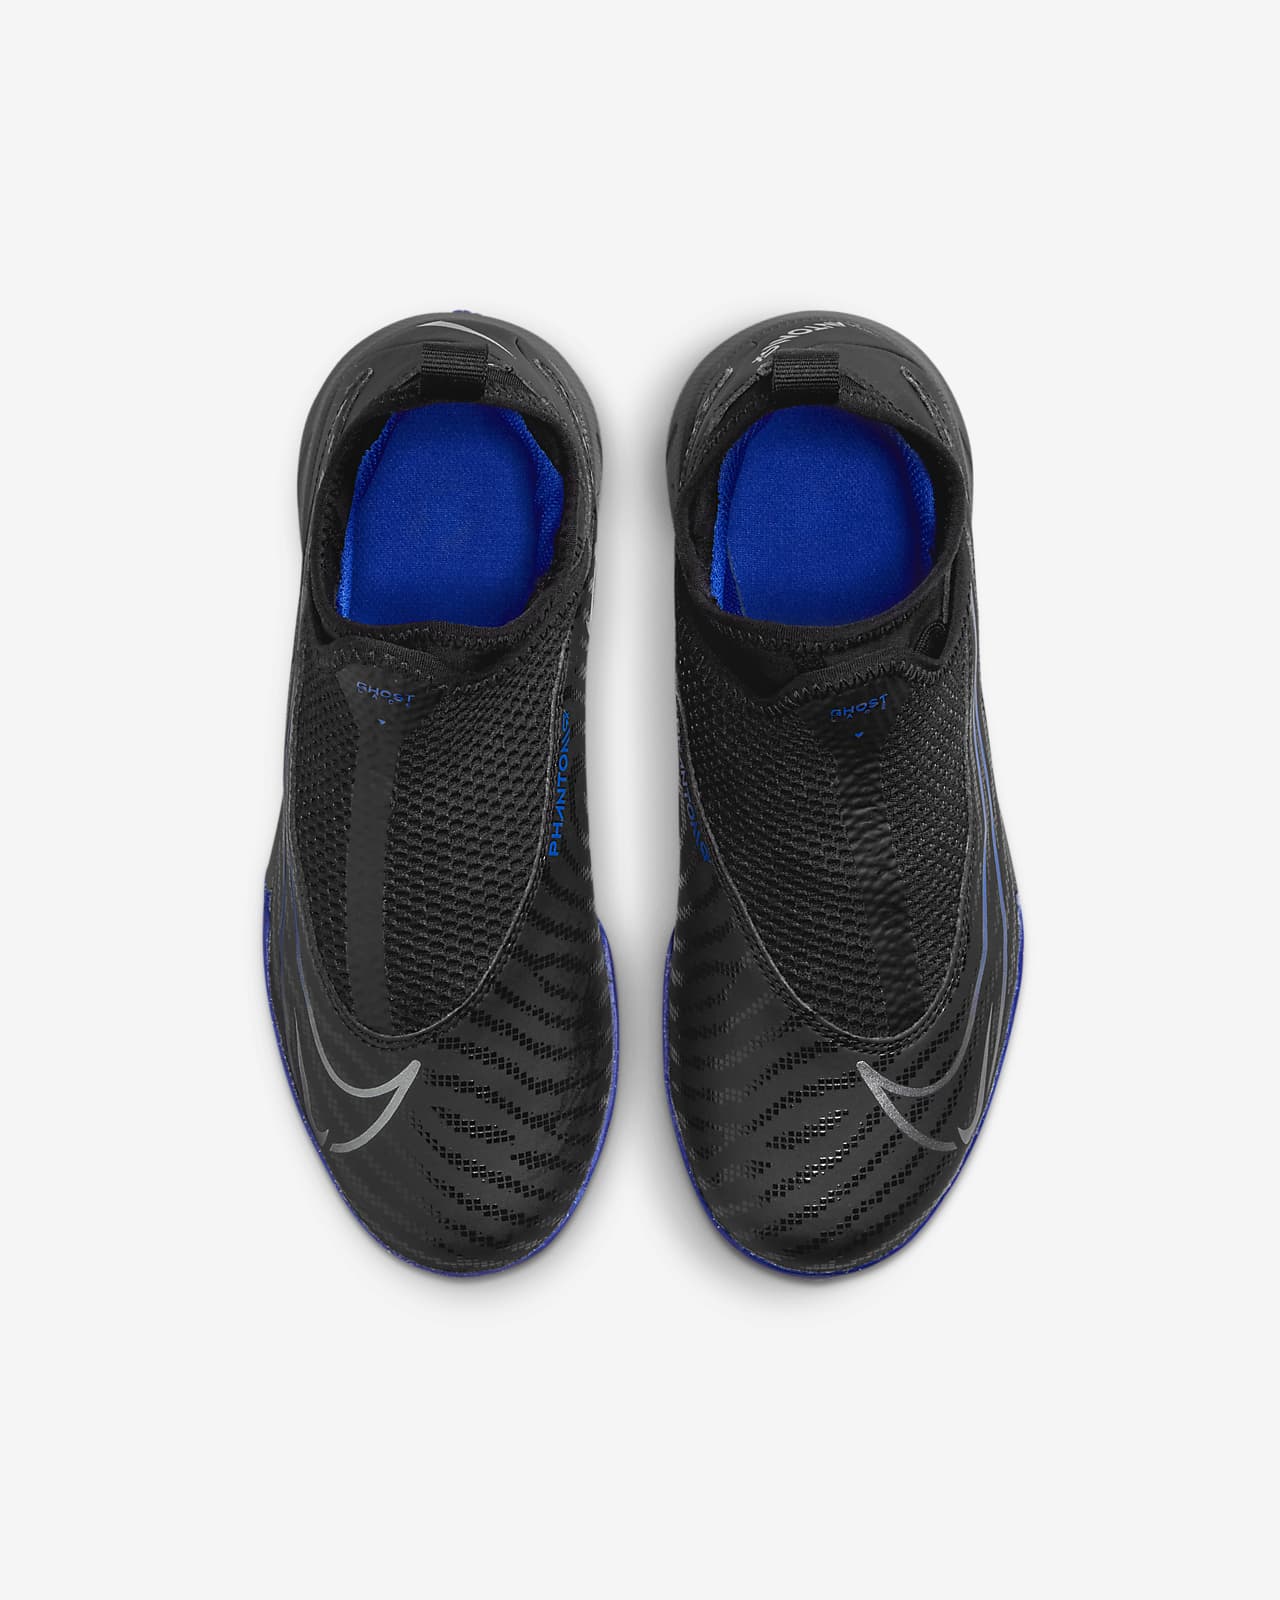 Chaussure de foot montante pour surface synthétique Nike Jr